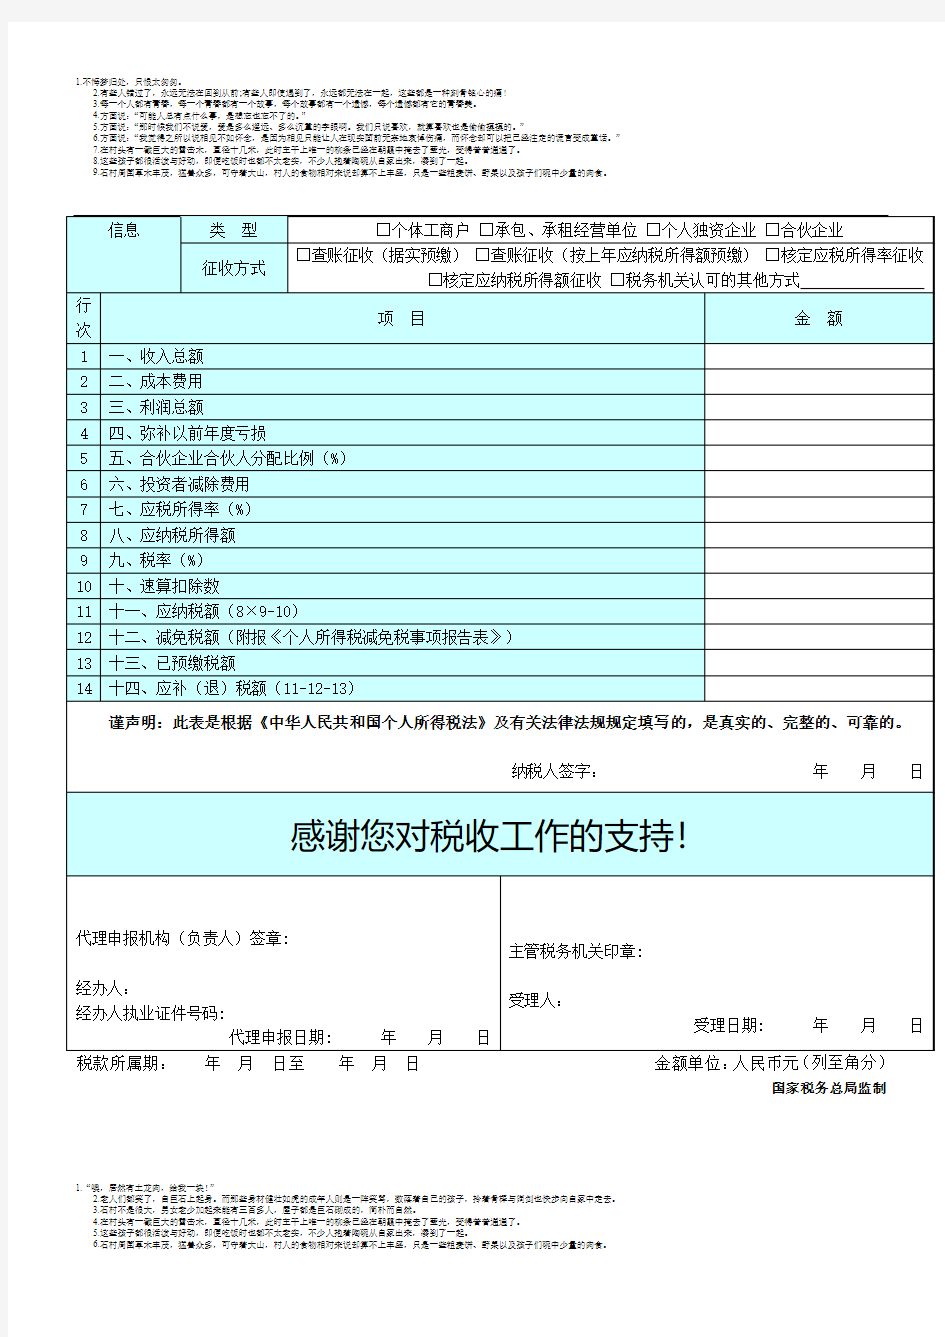 个人所得税生产经营所得纳税申报表(A表)2015版